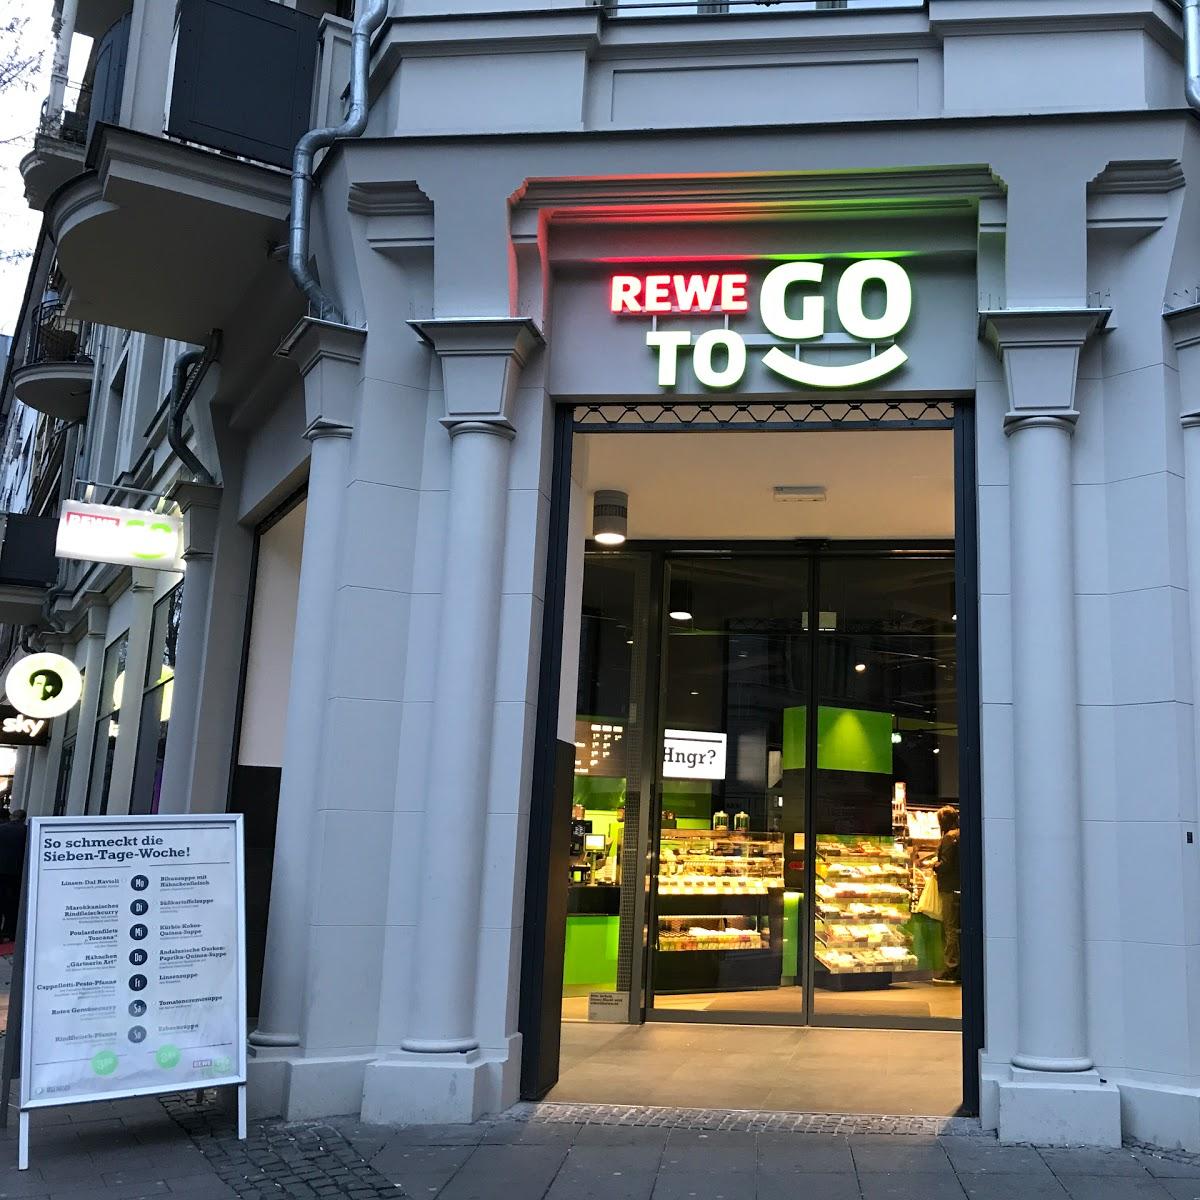 Restaurant "REWE To Go" in Frankfurt am Main